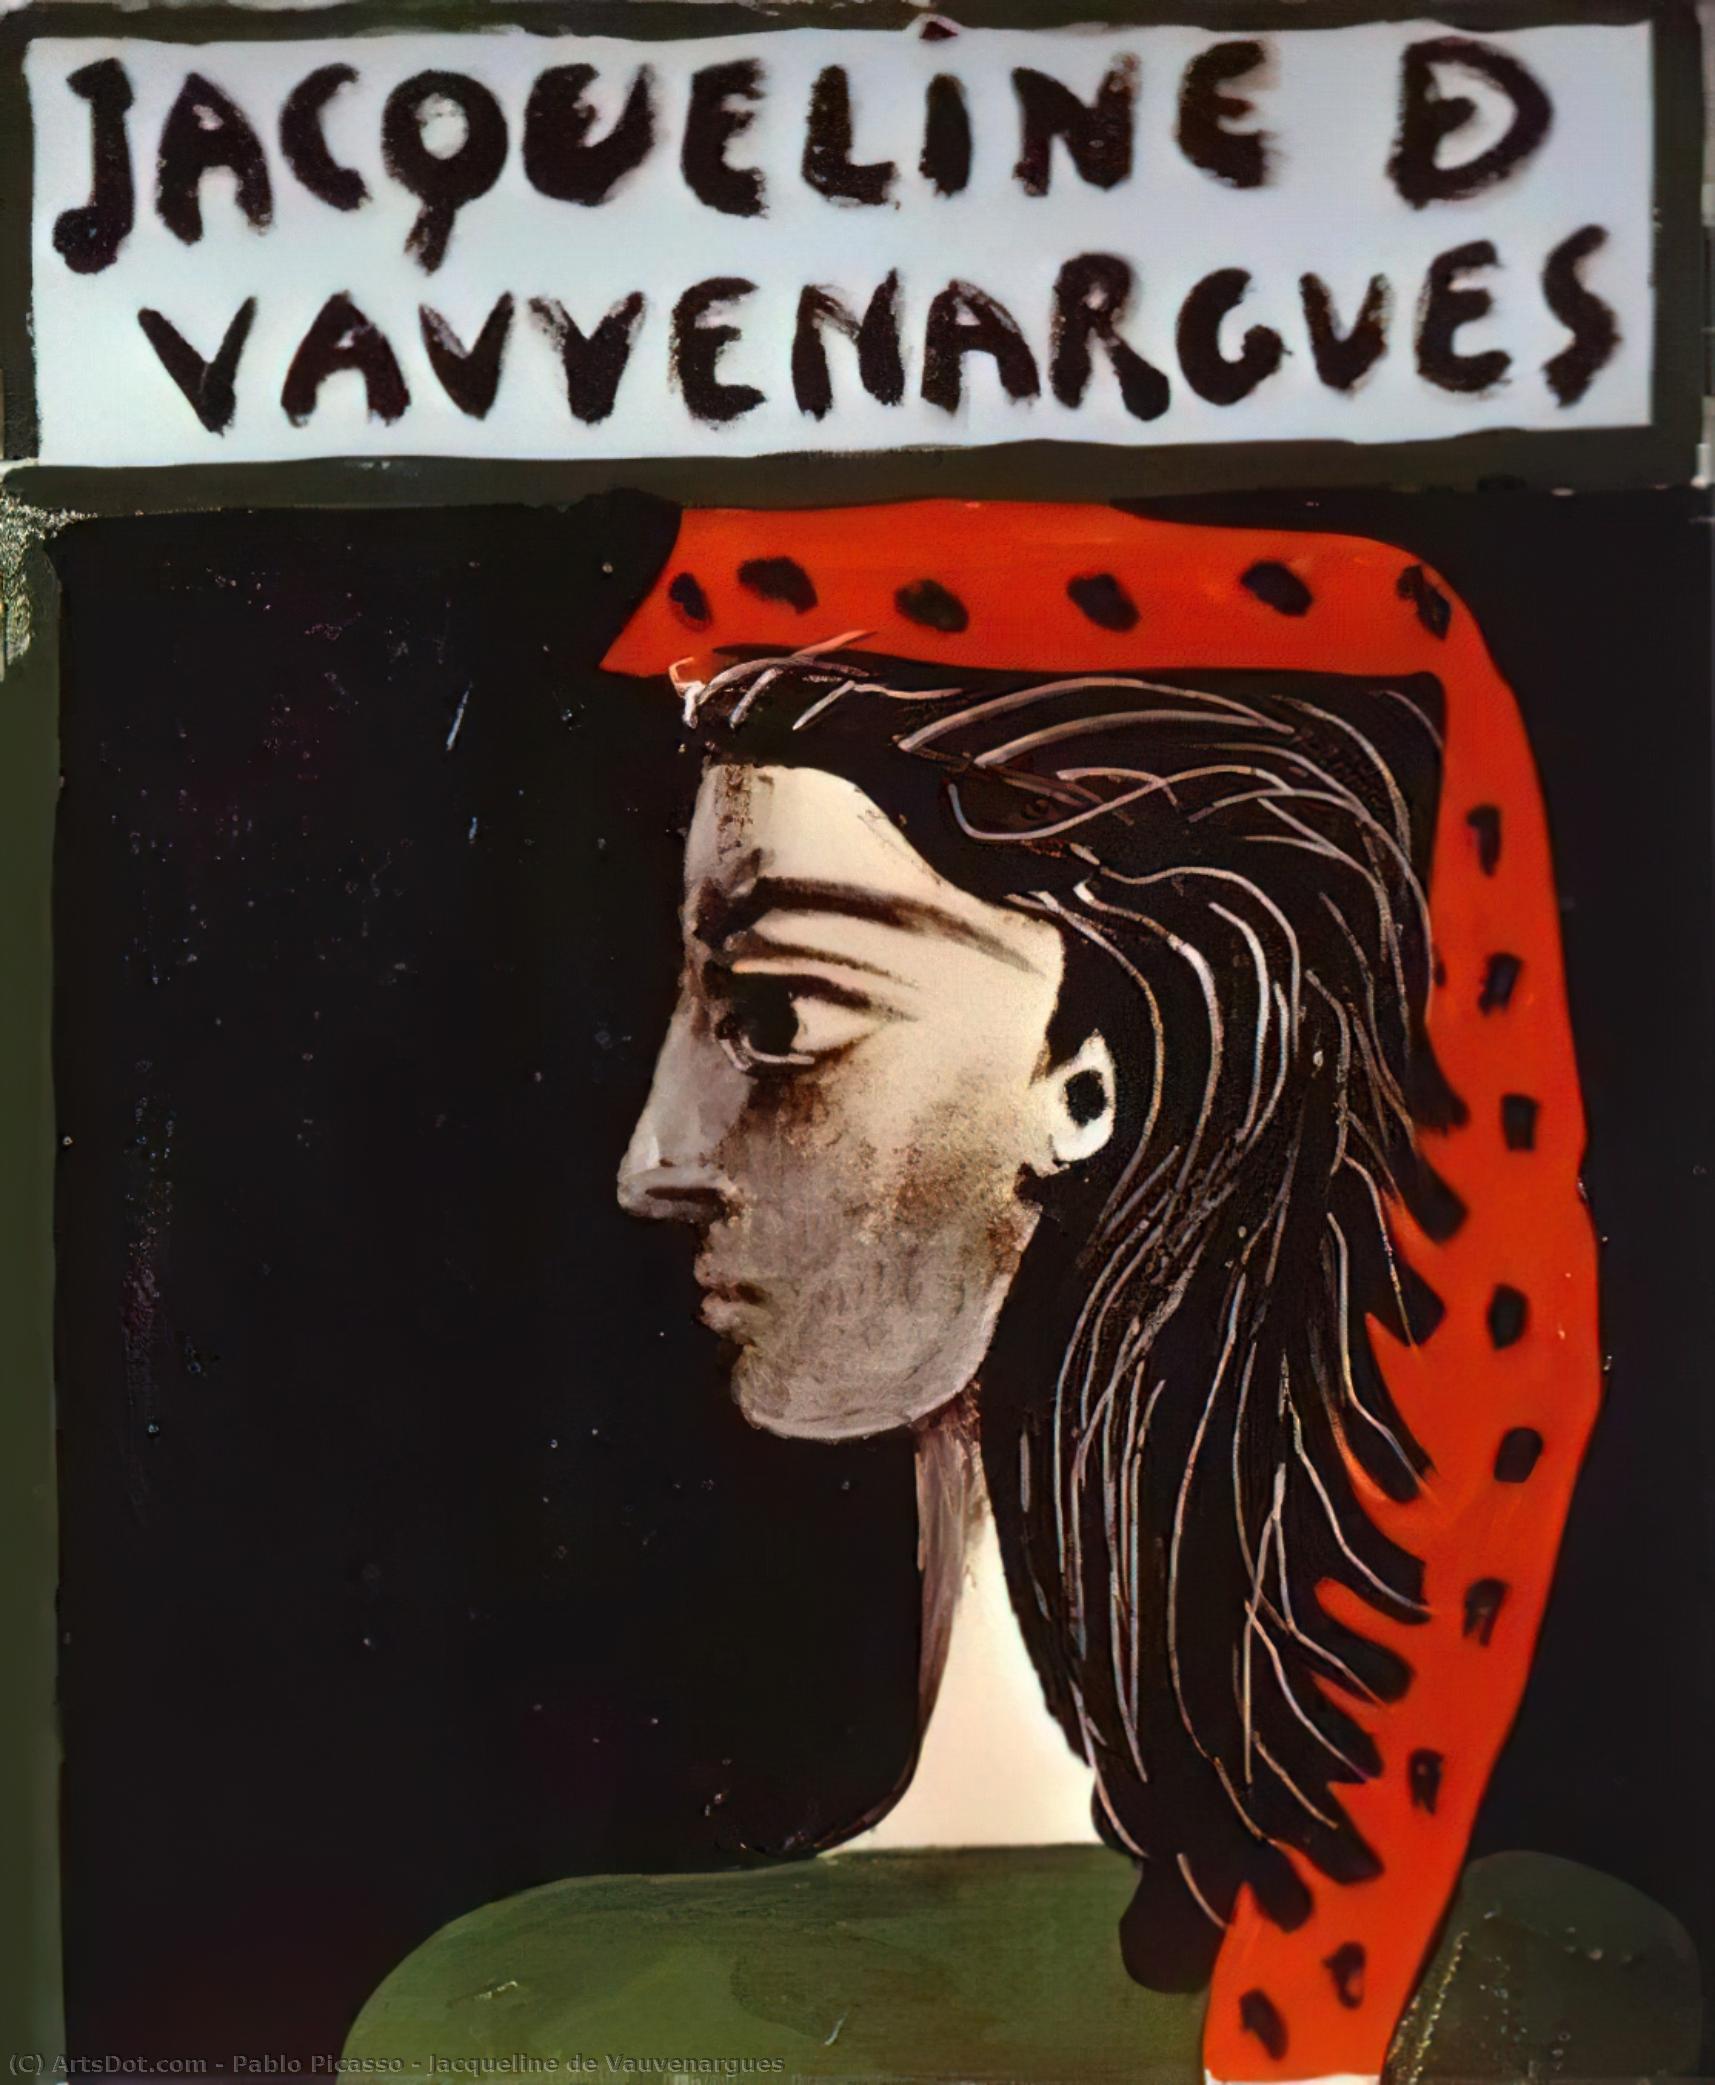 WikiOO.org - Encyclopedia of Fine Arts - Maľba, Artwork Pablo Picasso - Jacqueline de Vauvenargues